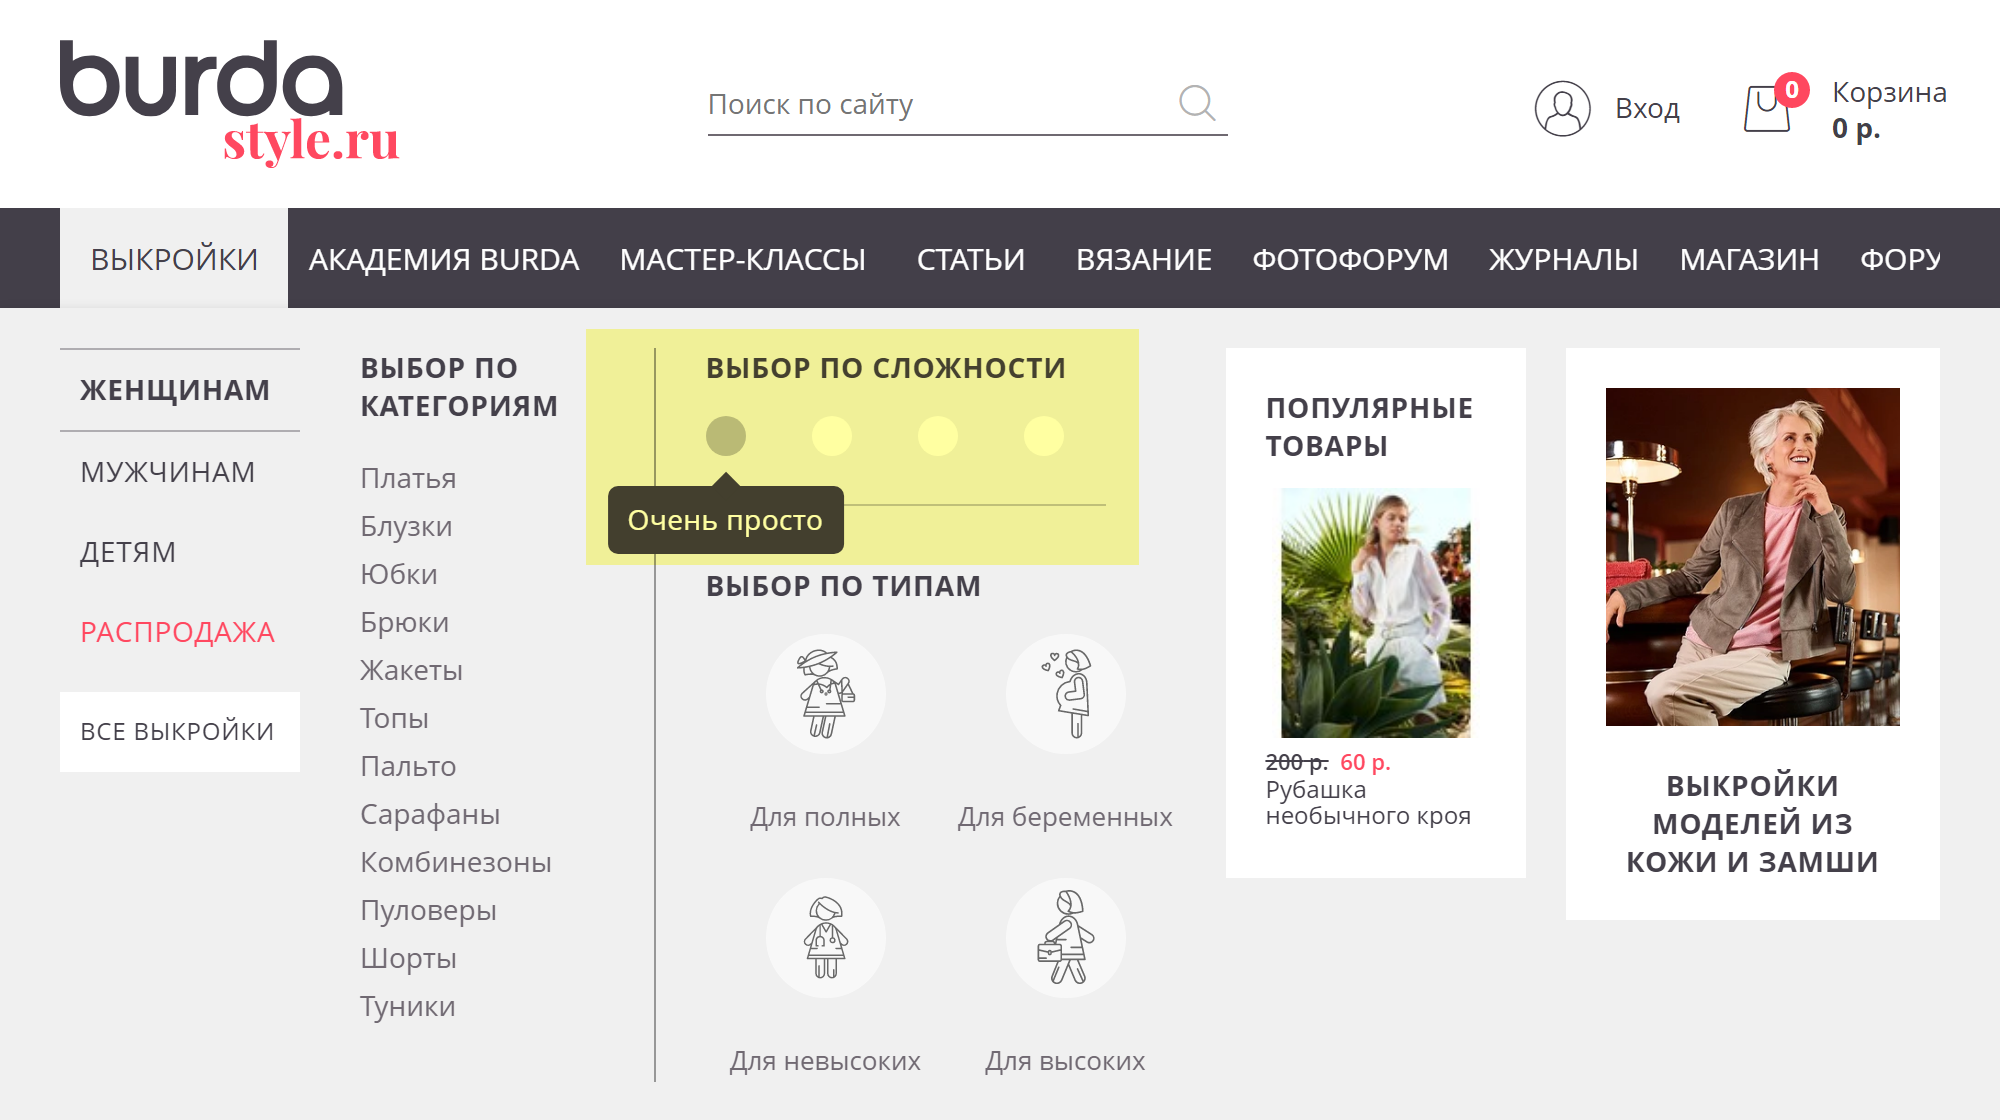 На burdastyle.ru можно установить фильтры для выбора электронных выкроек, в том числе выбор по сложности и типам фигур